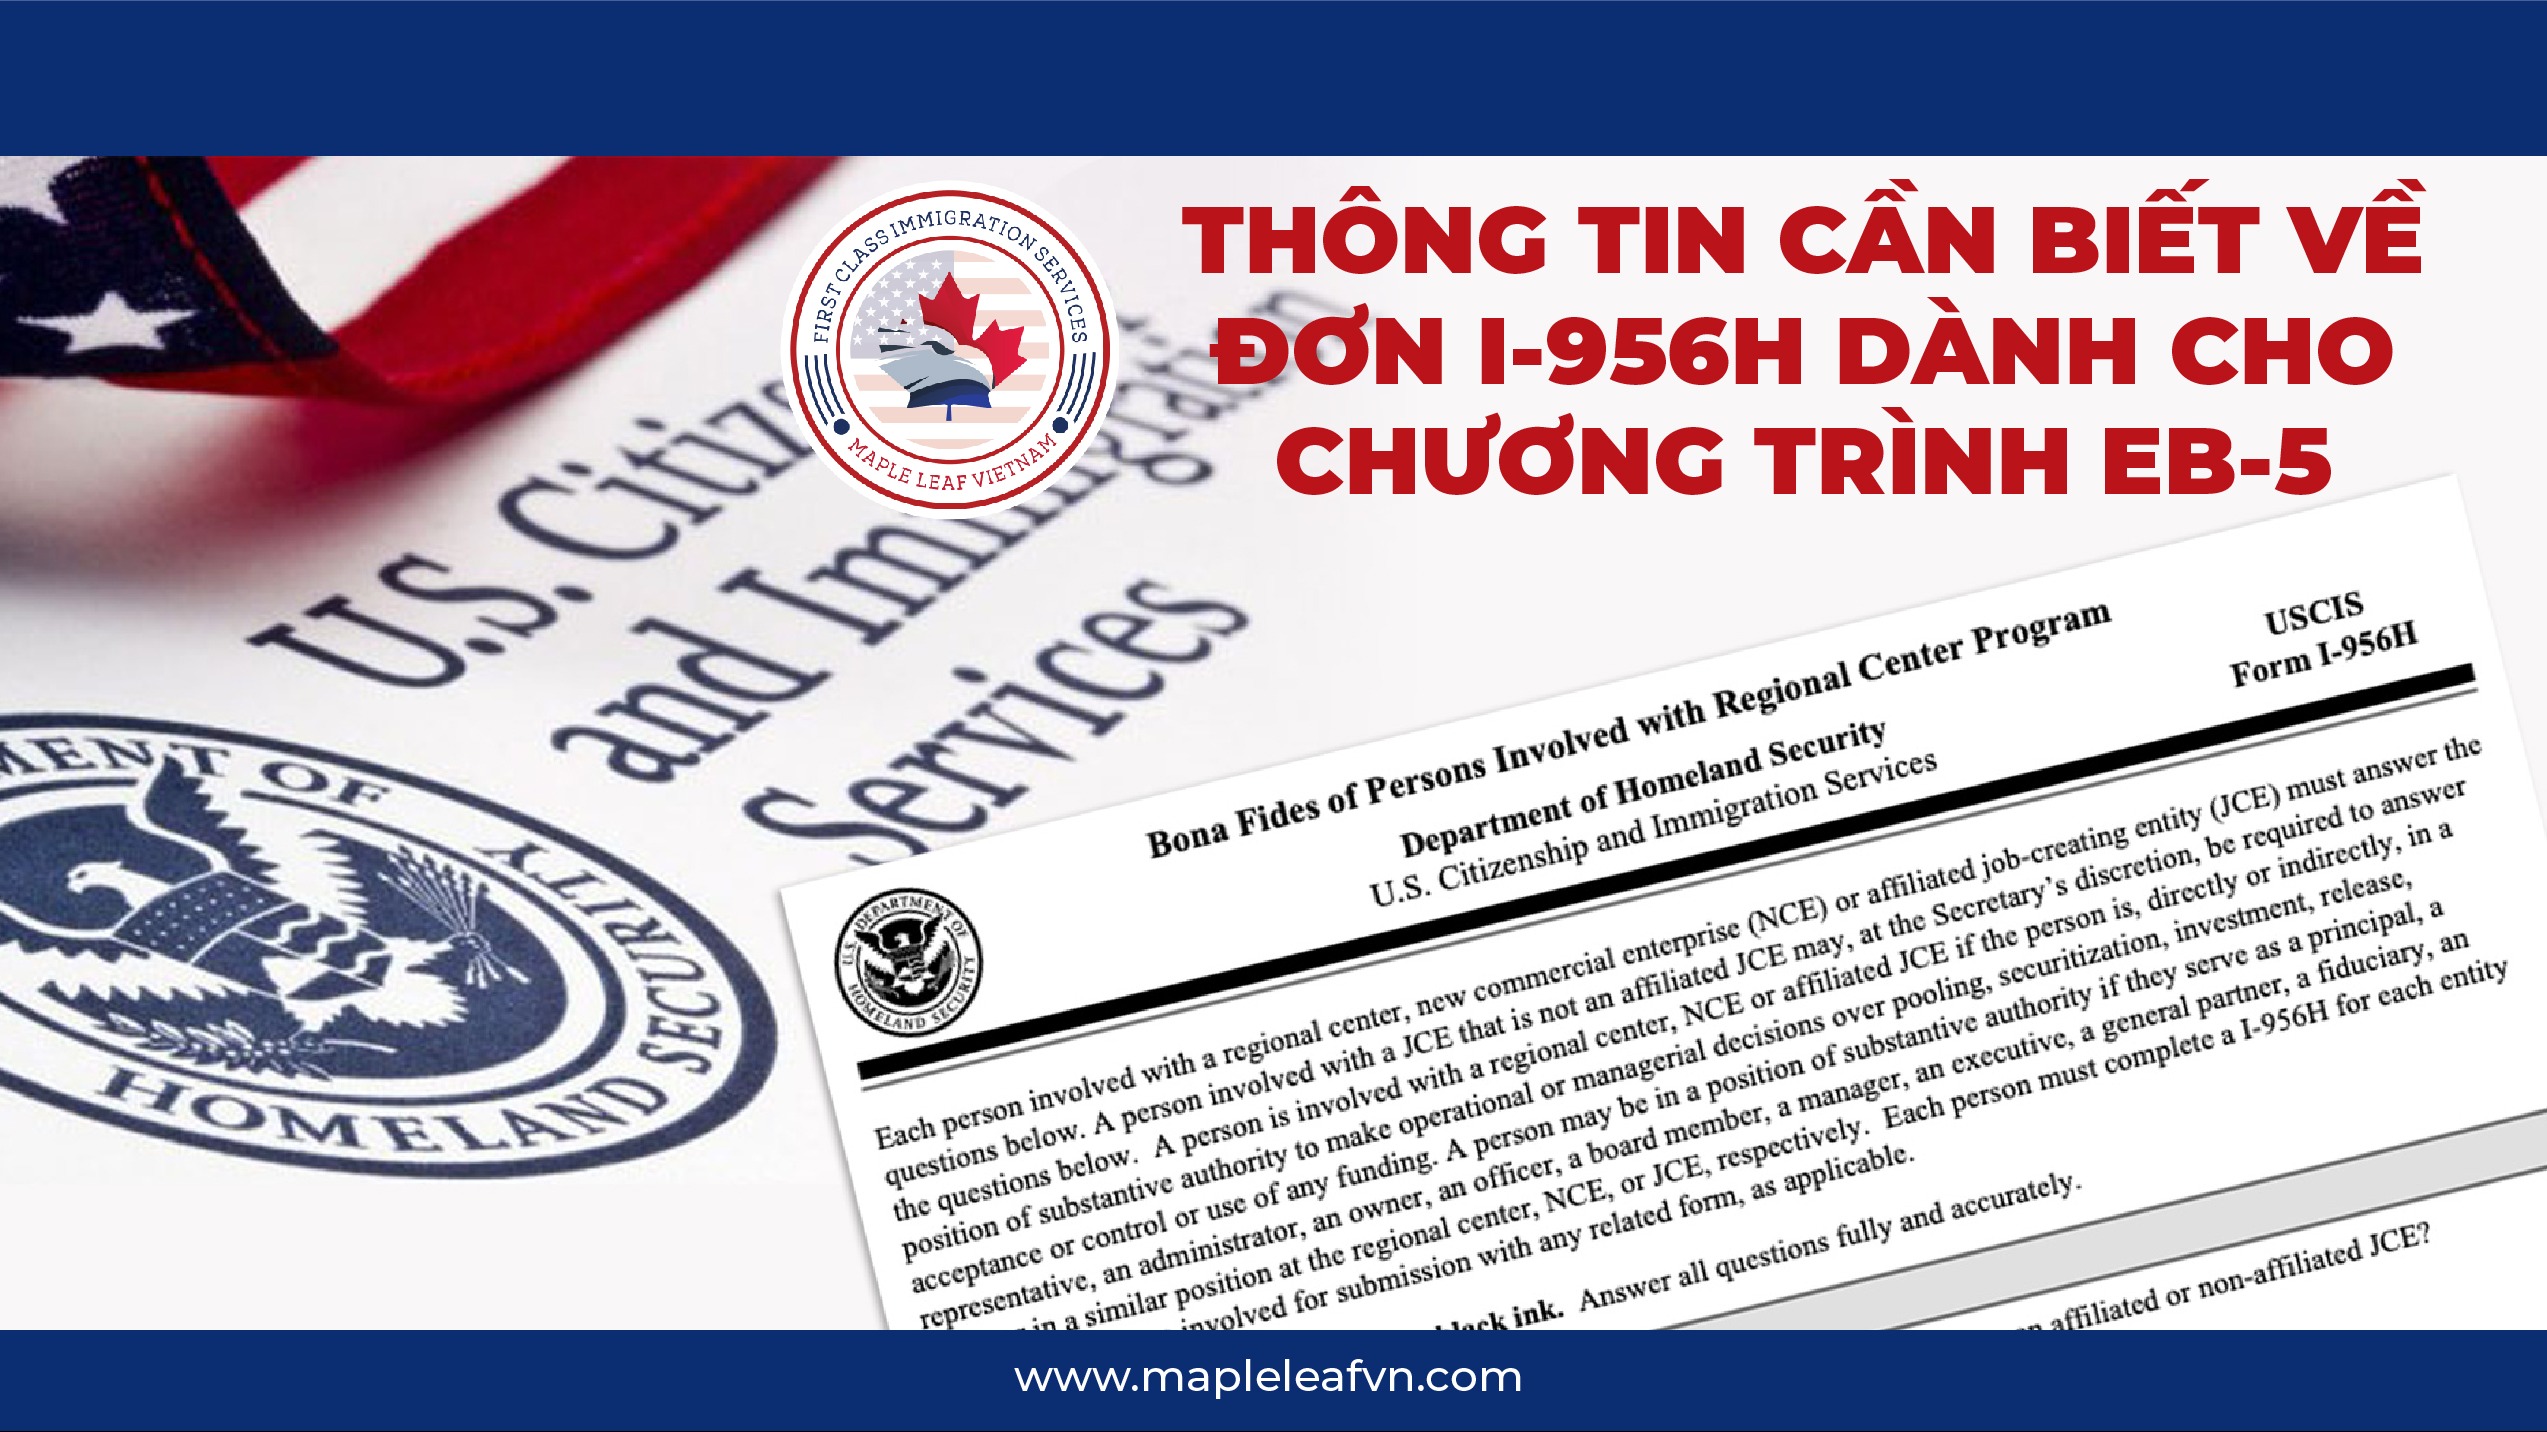 thong-tin-can-biet-ve-don-i-956h-danh-cho-chuong-trinh-eb-5